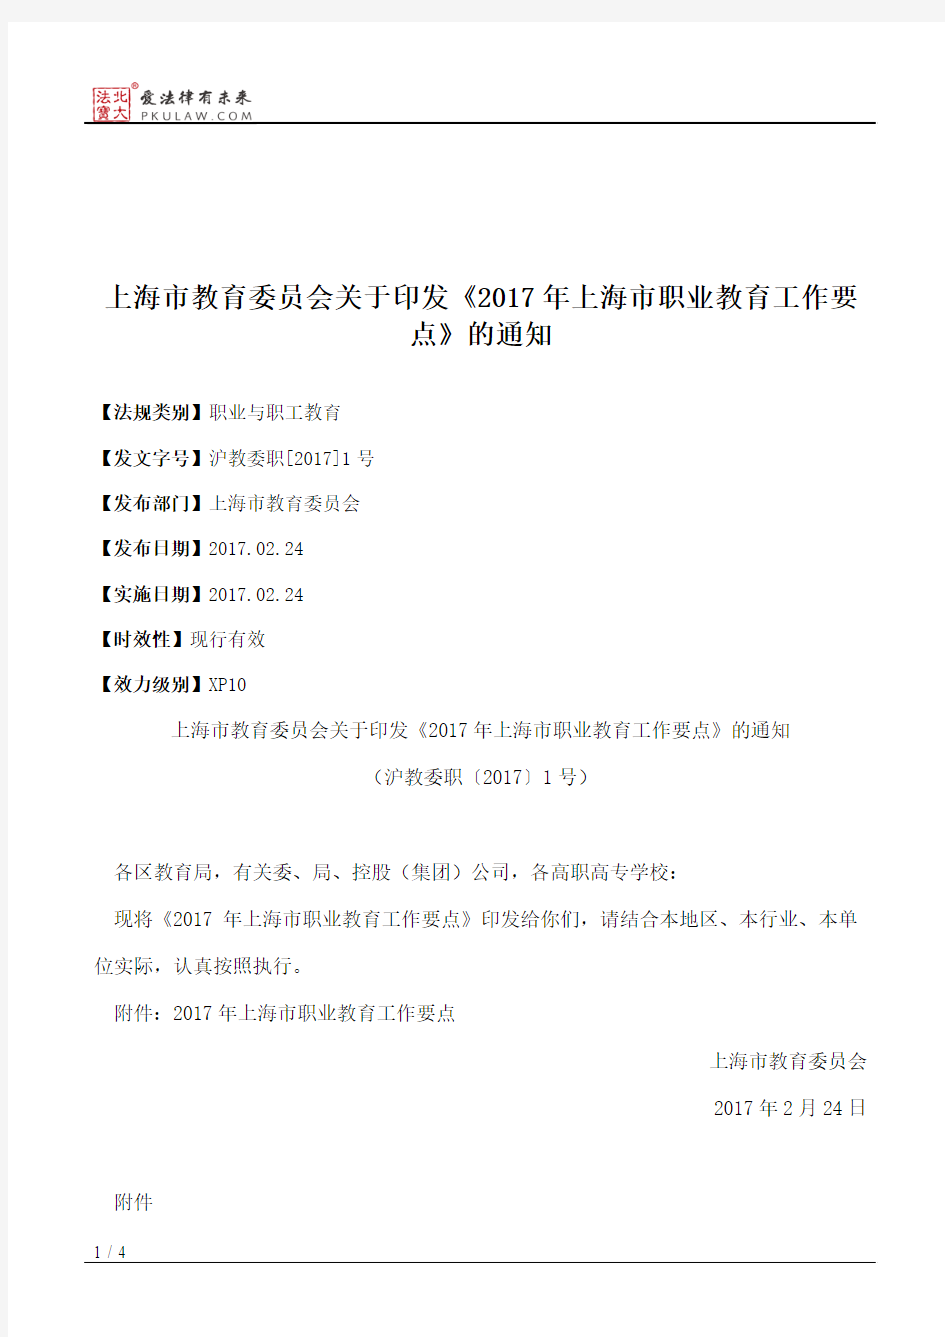 上海市教育委员会关于印发《2017年上海市职业教育工作要点》的通知